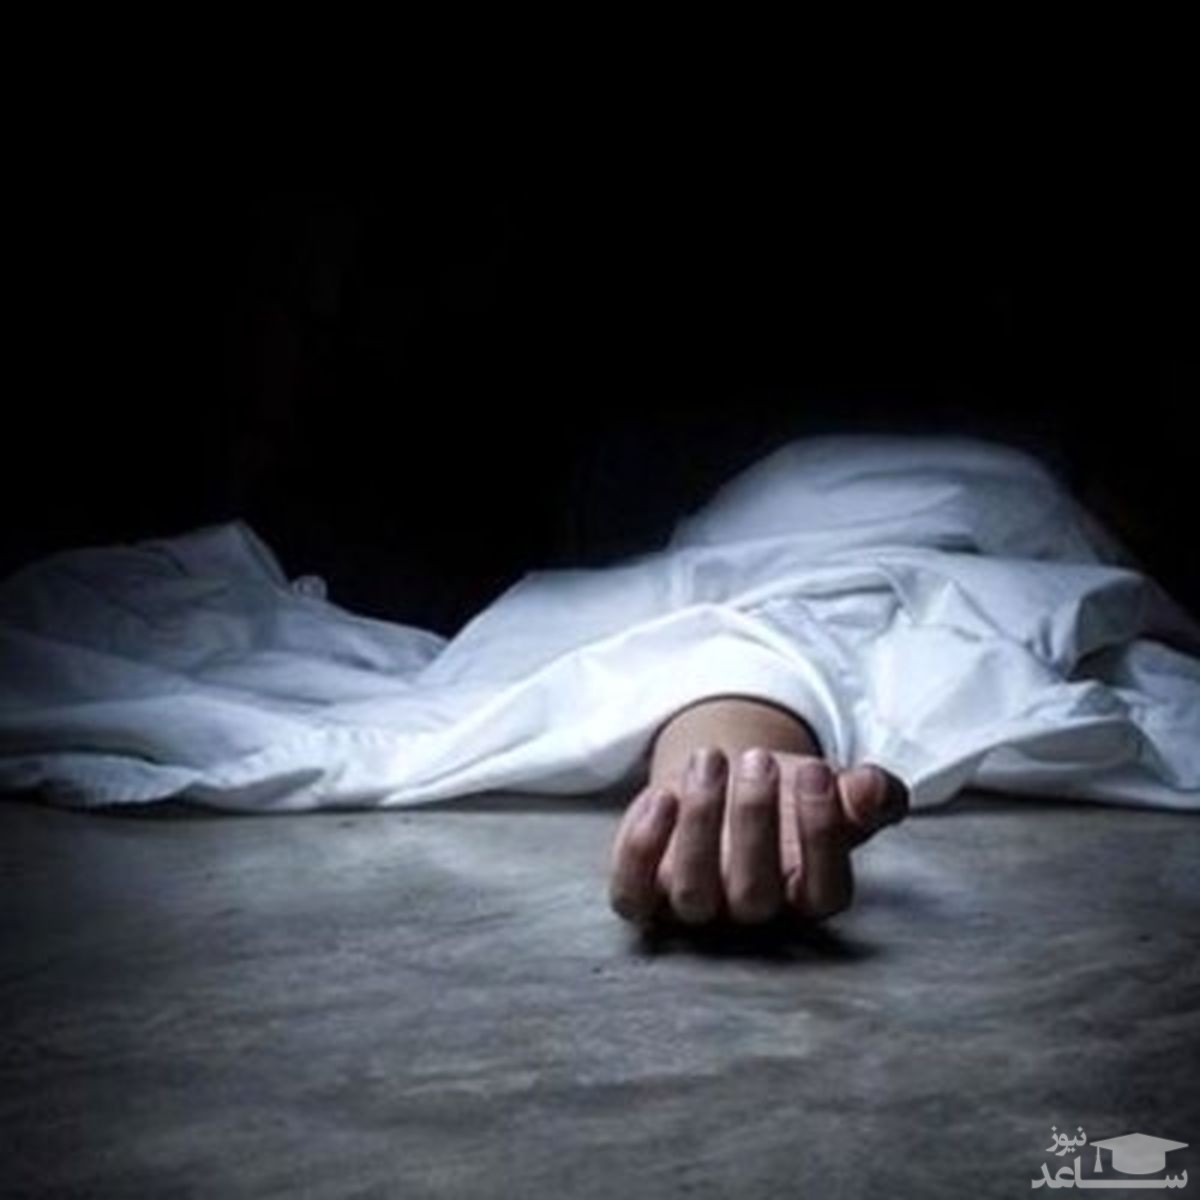 قتل زن علت خودکشی زن صیغه ای خودکشی در تهران حوادث تهران اخبار قتل اخبار خودکشی اخبار جنایی اخبار تهران